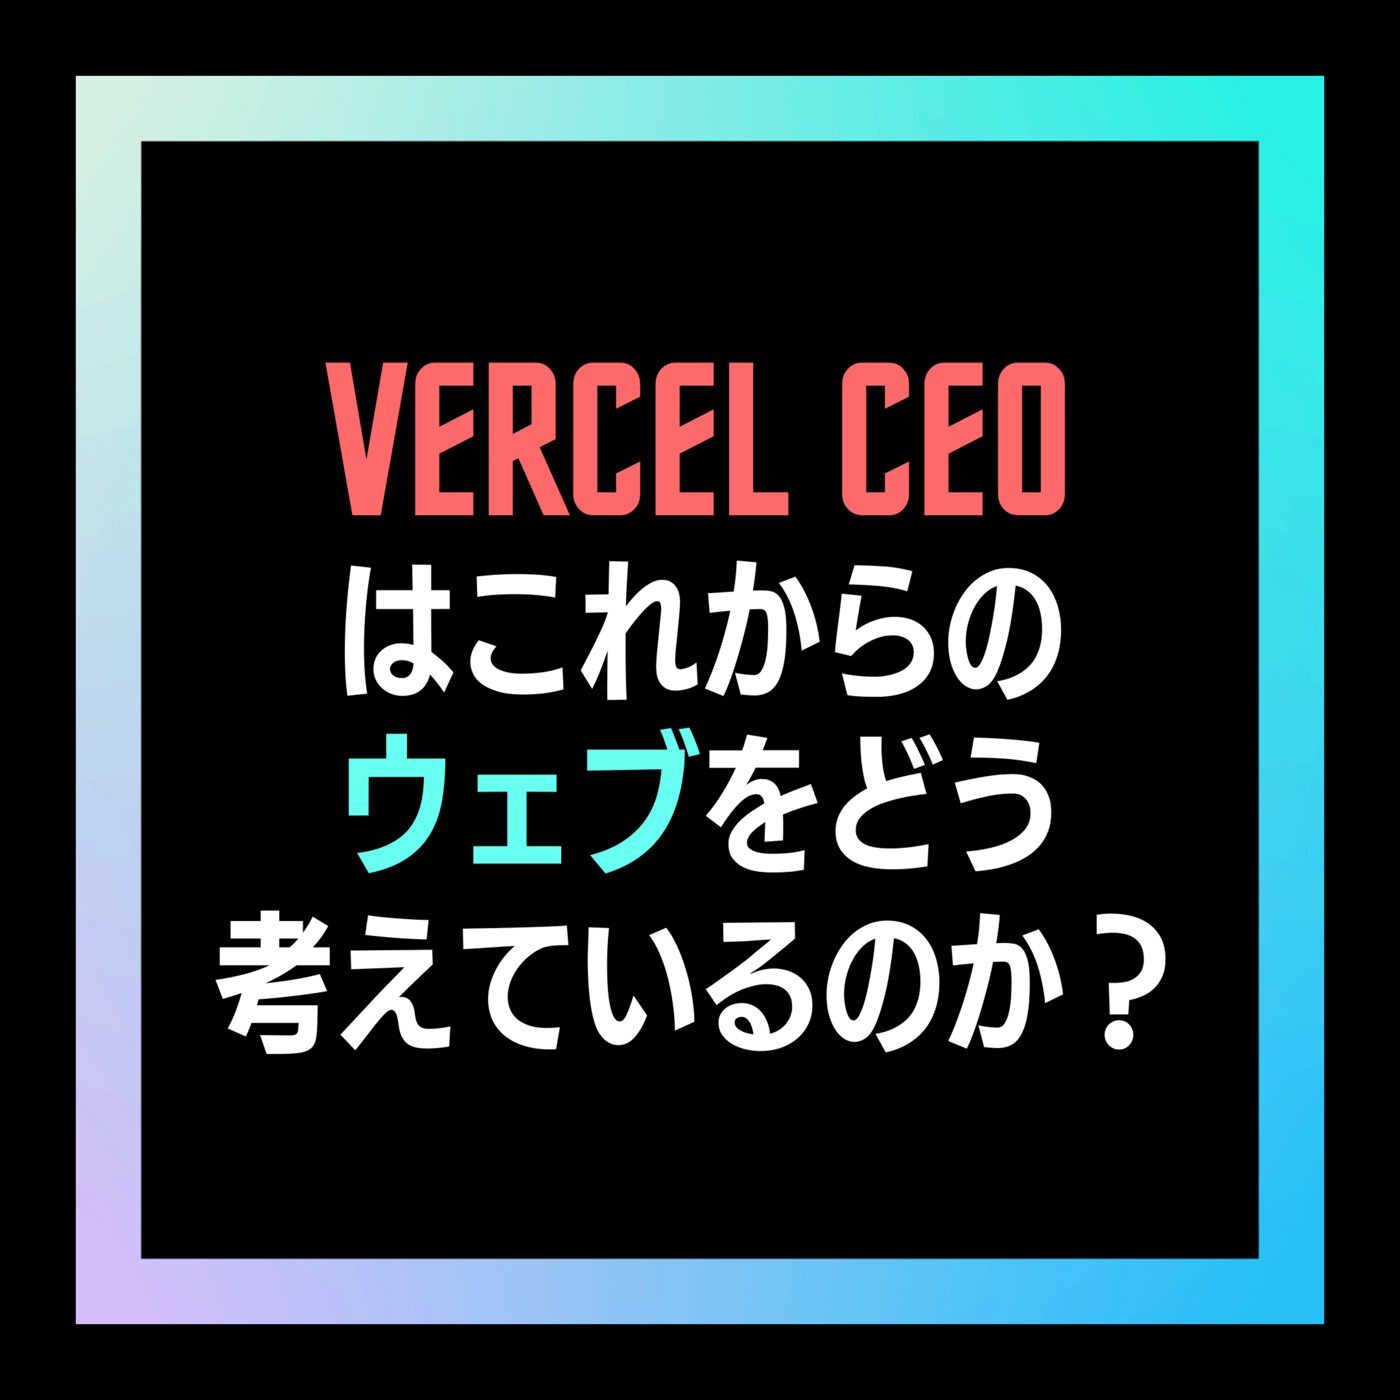 10- Vercel CEOはこれからのウェブをどう考えているのか？